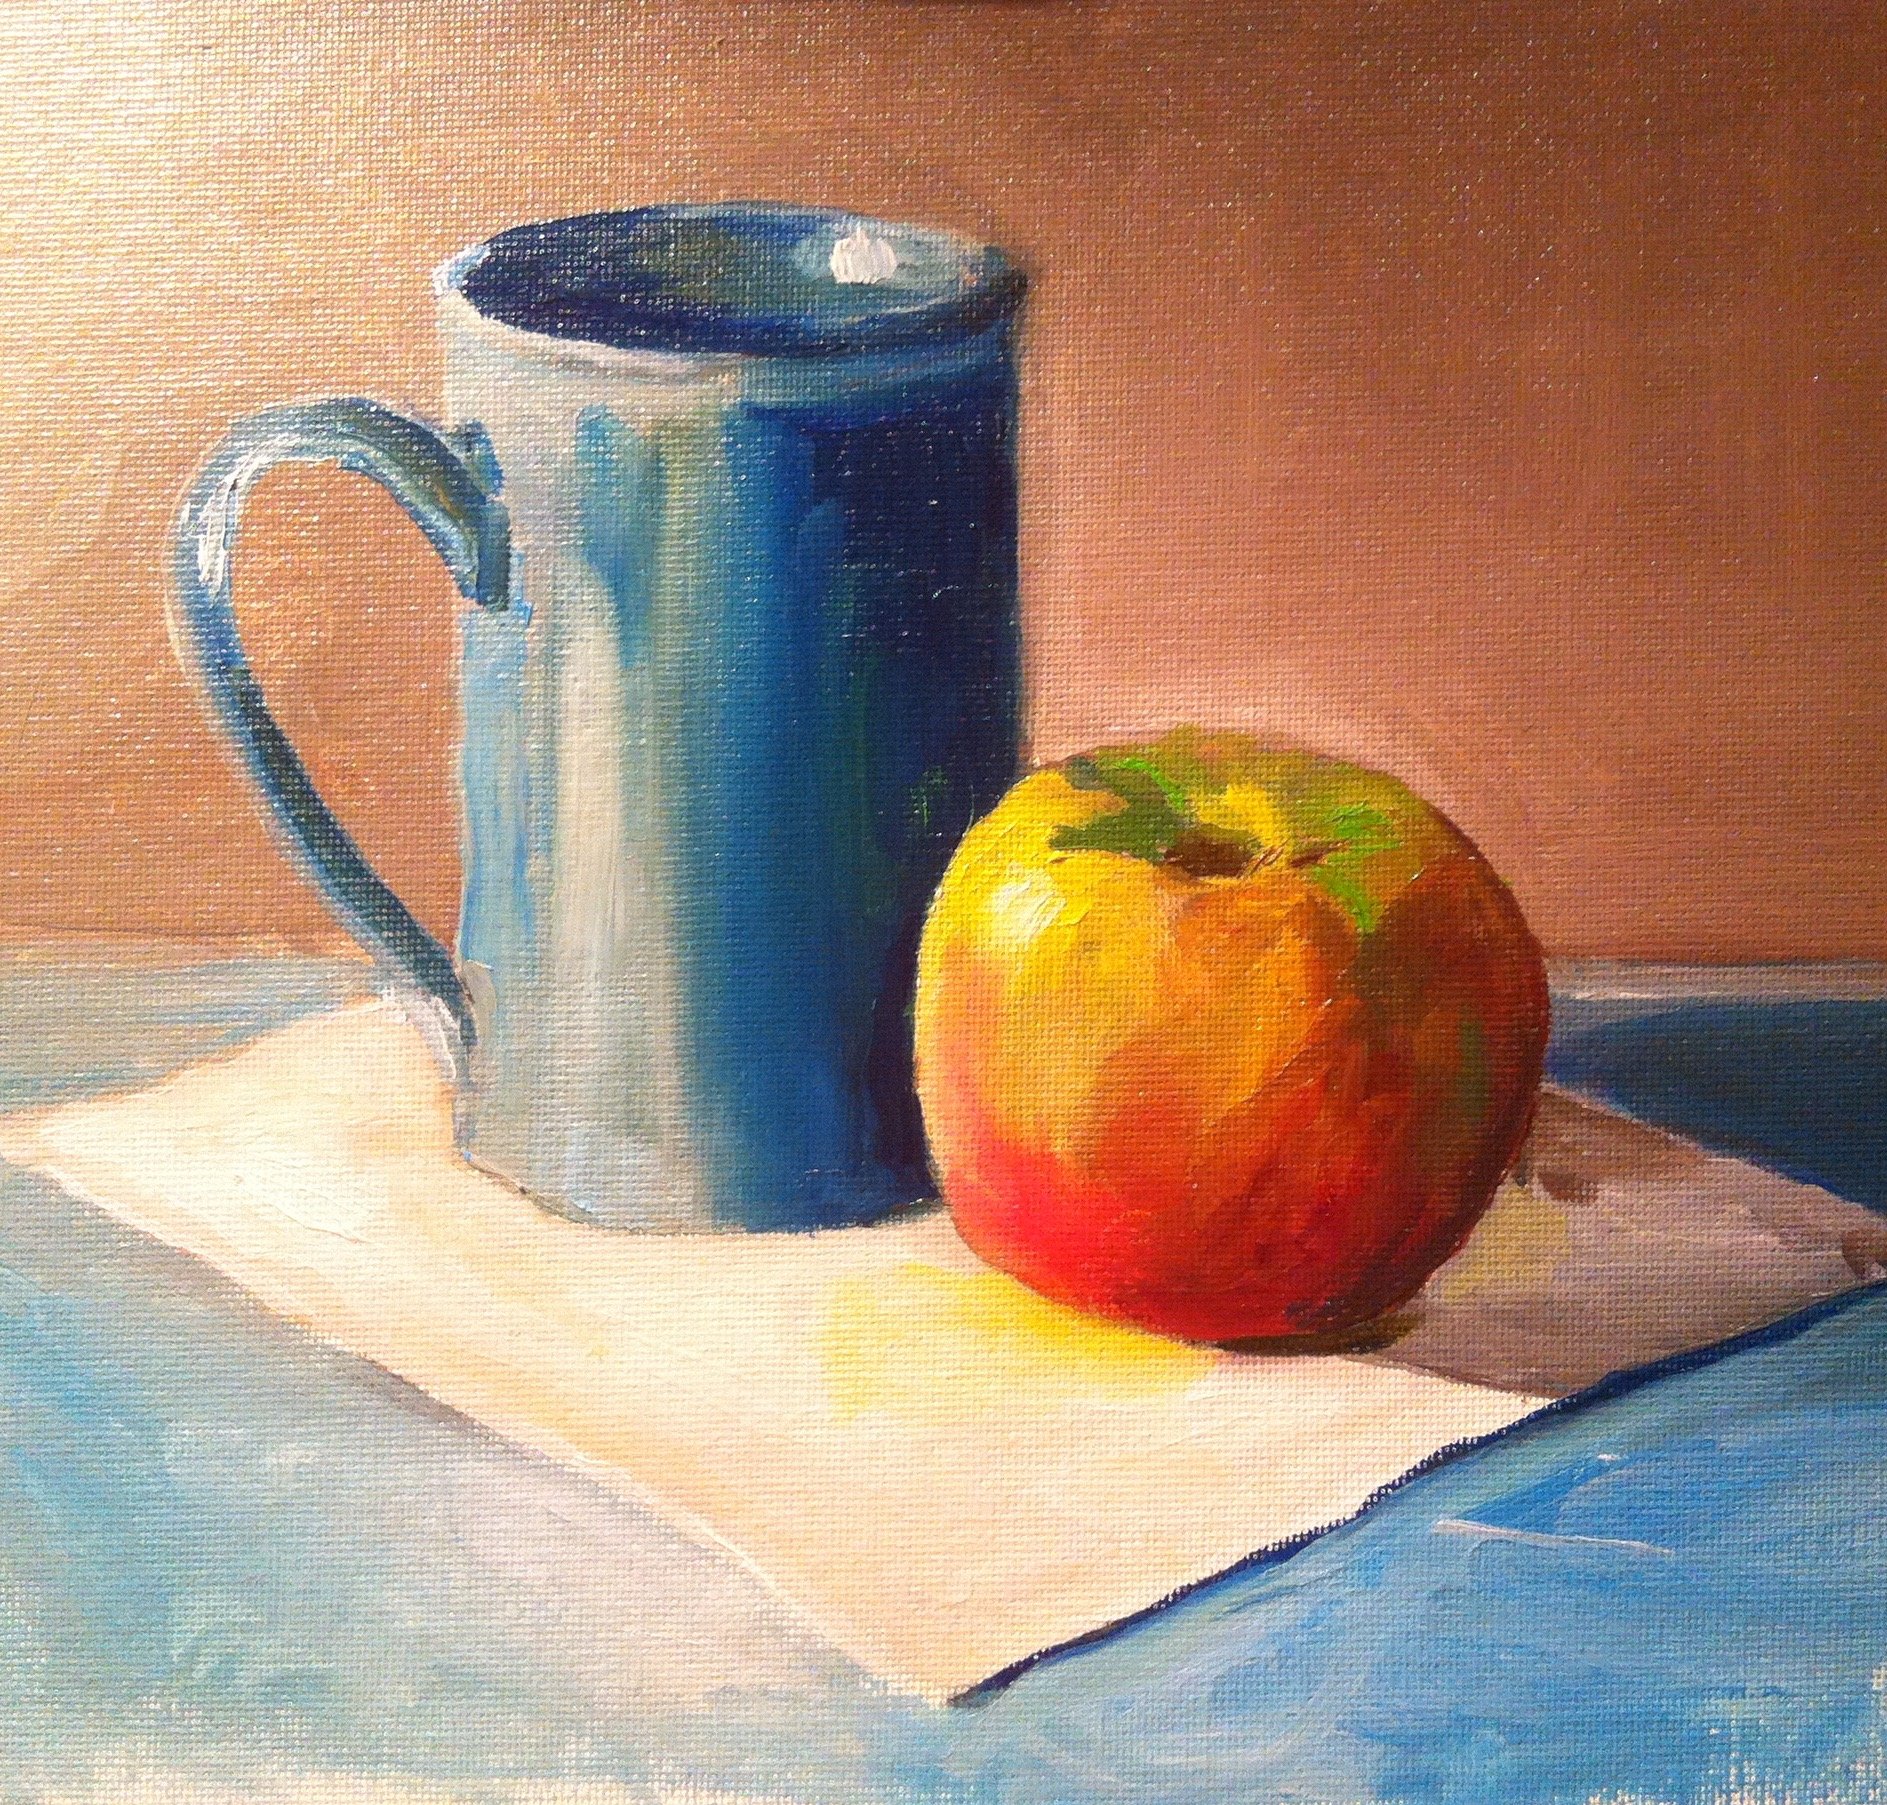 Turquoise Mug and Apple